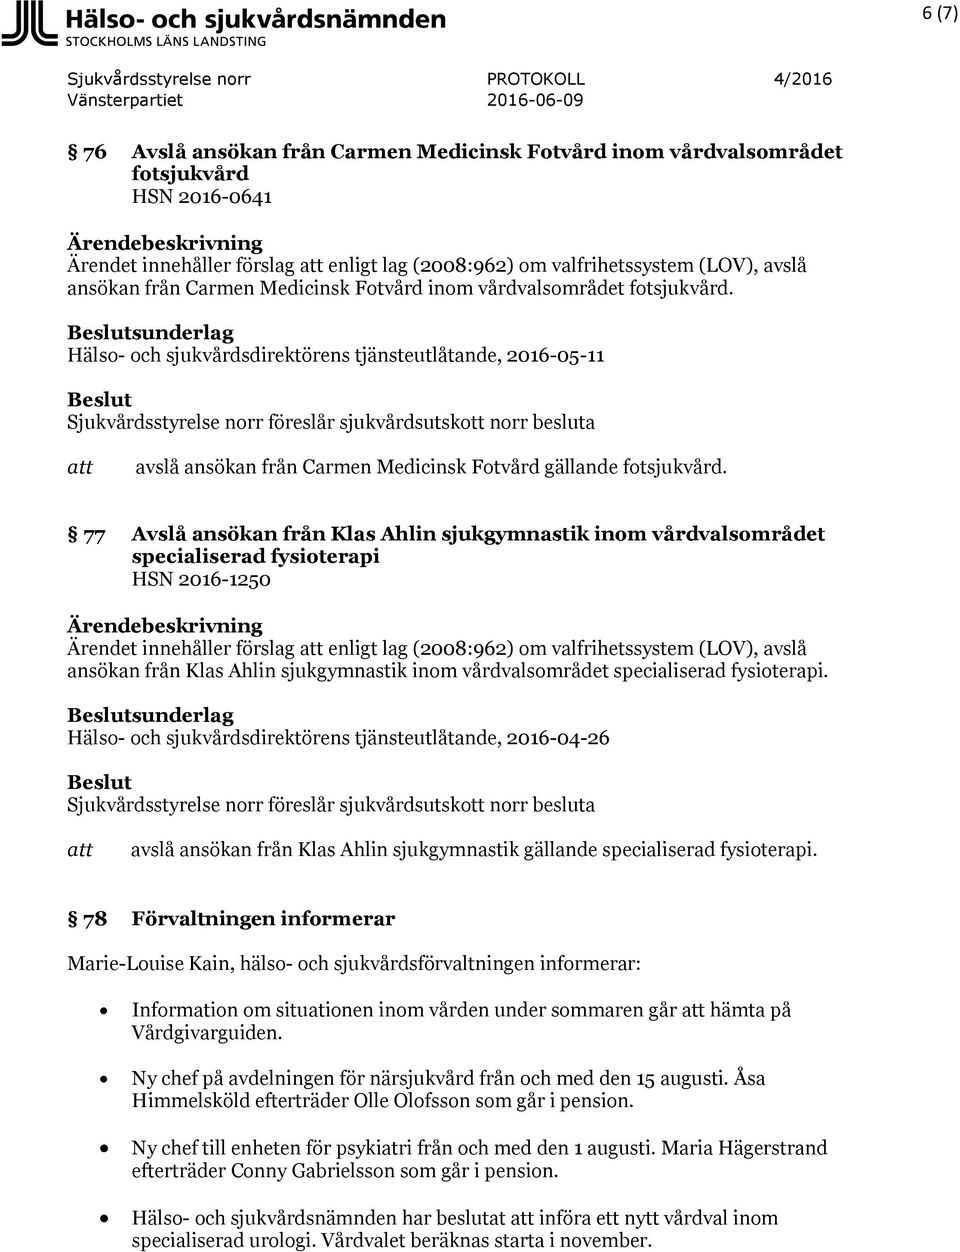 77 Avslå ansökan från Klas Ahlin sjukgymnastik inom vårdvalsområdet specialiserad fysioterapi HSN 2016-1250 Ärendet innehåller förslag enligt lag (2008:962) om valfrihetssystem (LOV), avslå ansökan